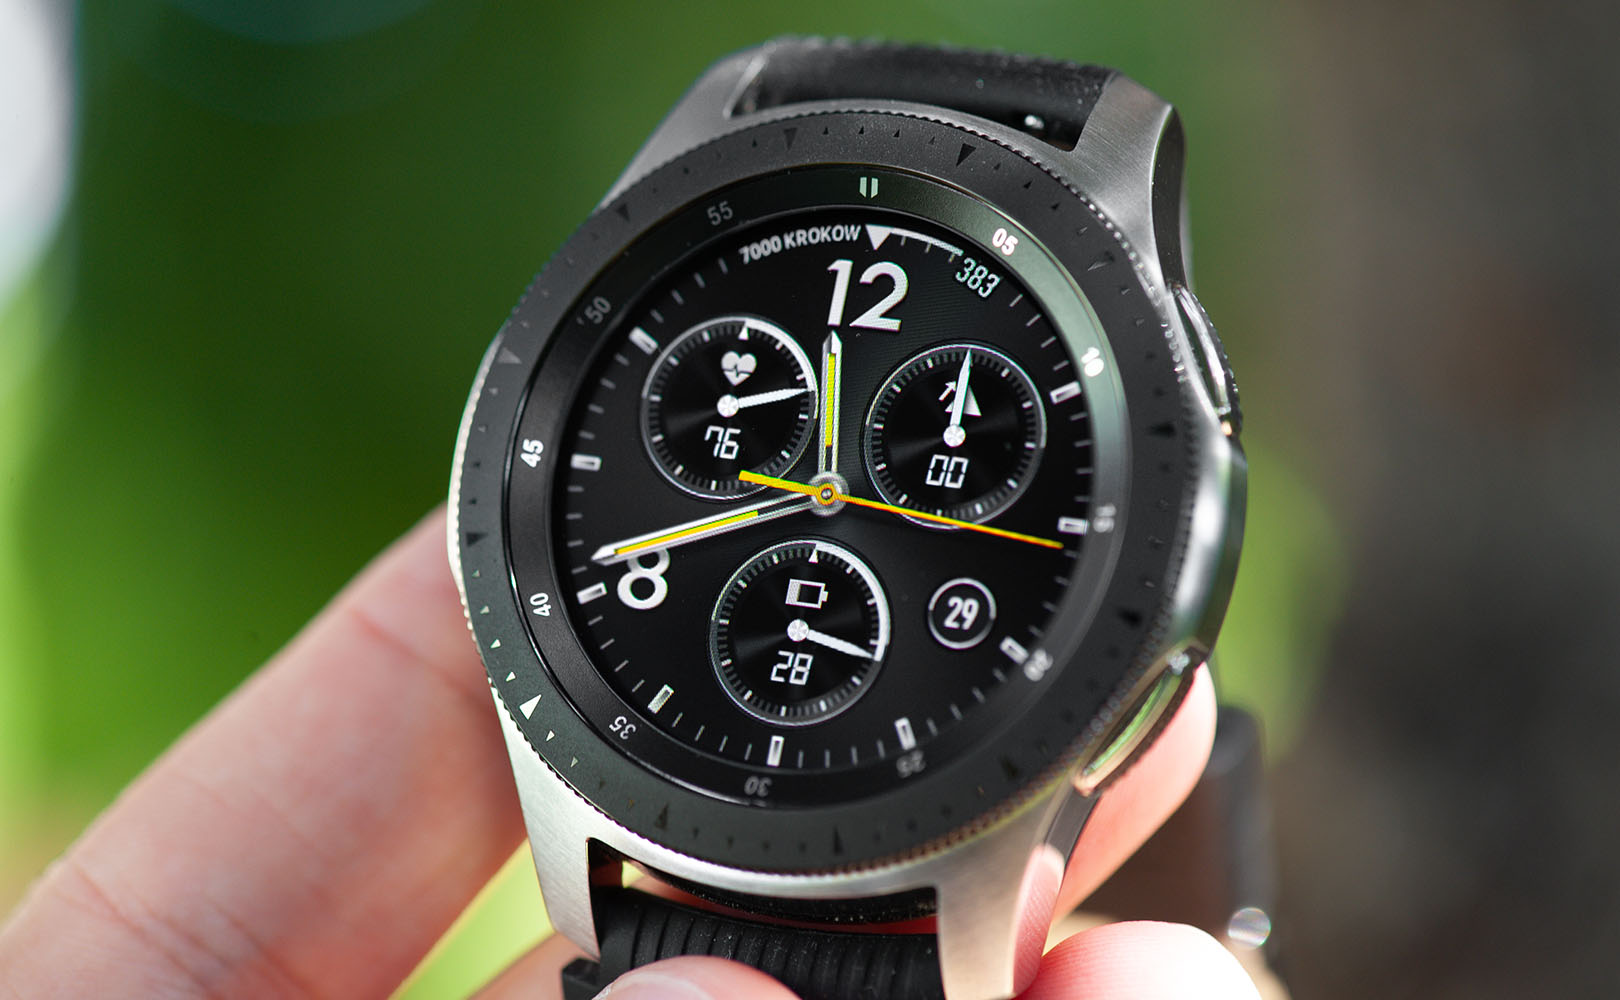 Samsung Galaxy Watch R800 Silver